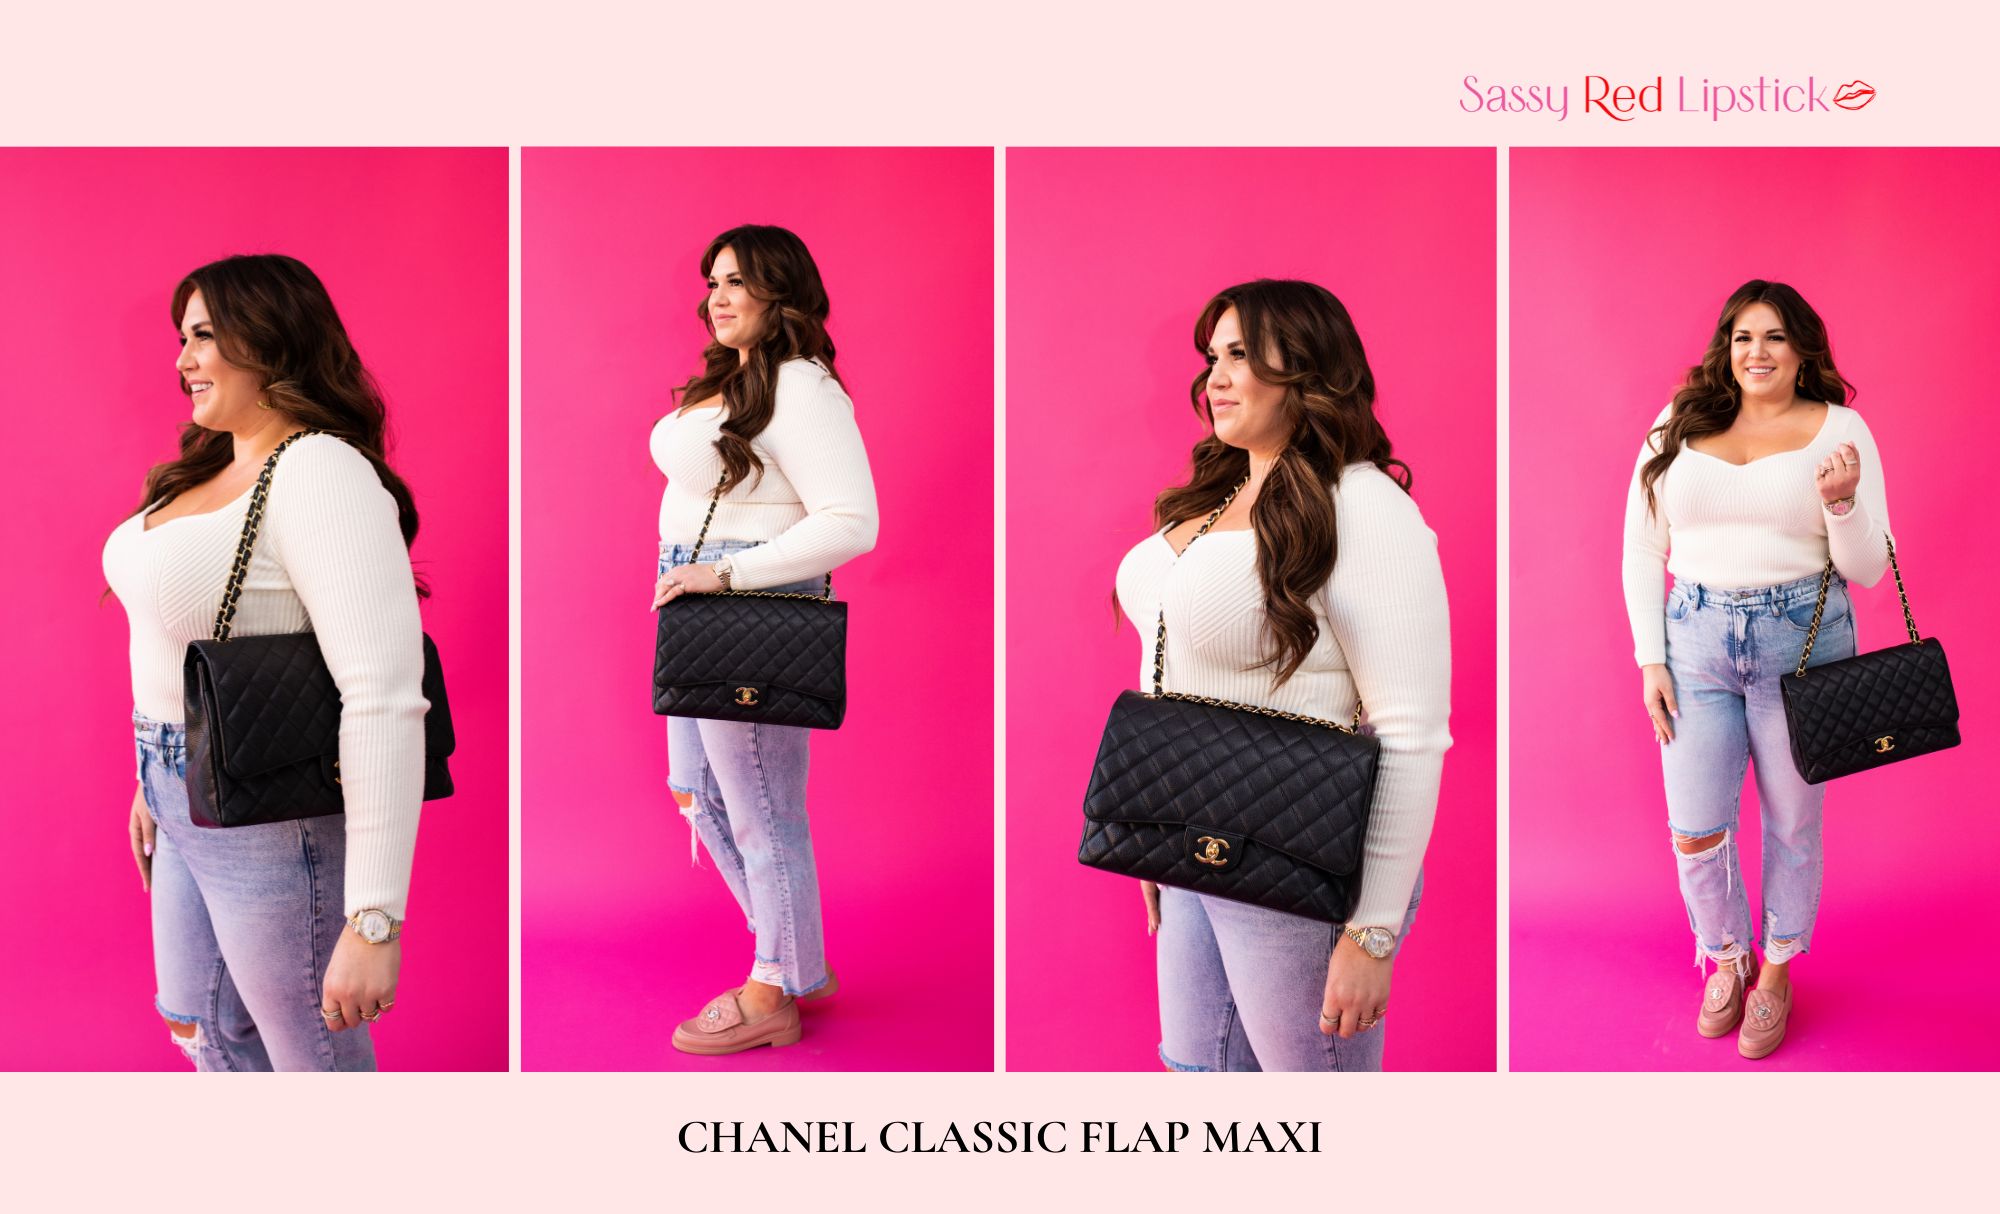 Chanel Classic Flap Size Comparison on Curves - PurseBop